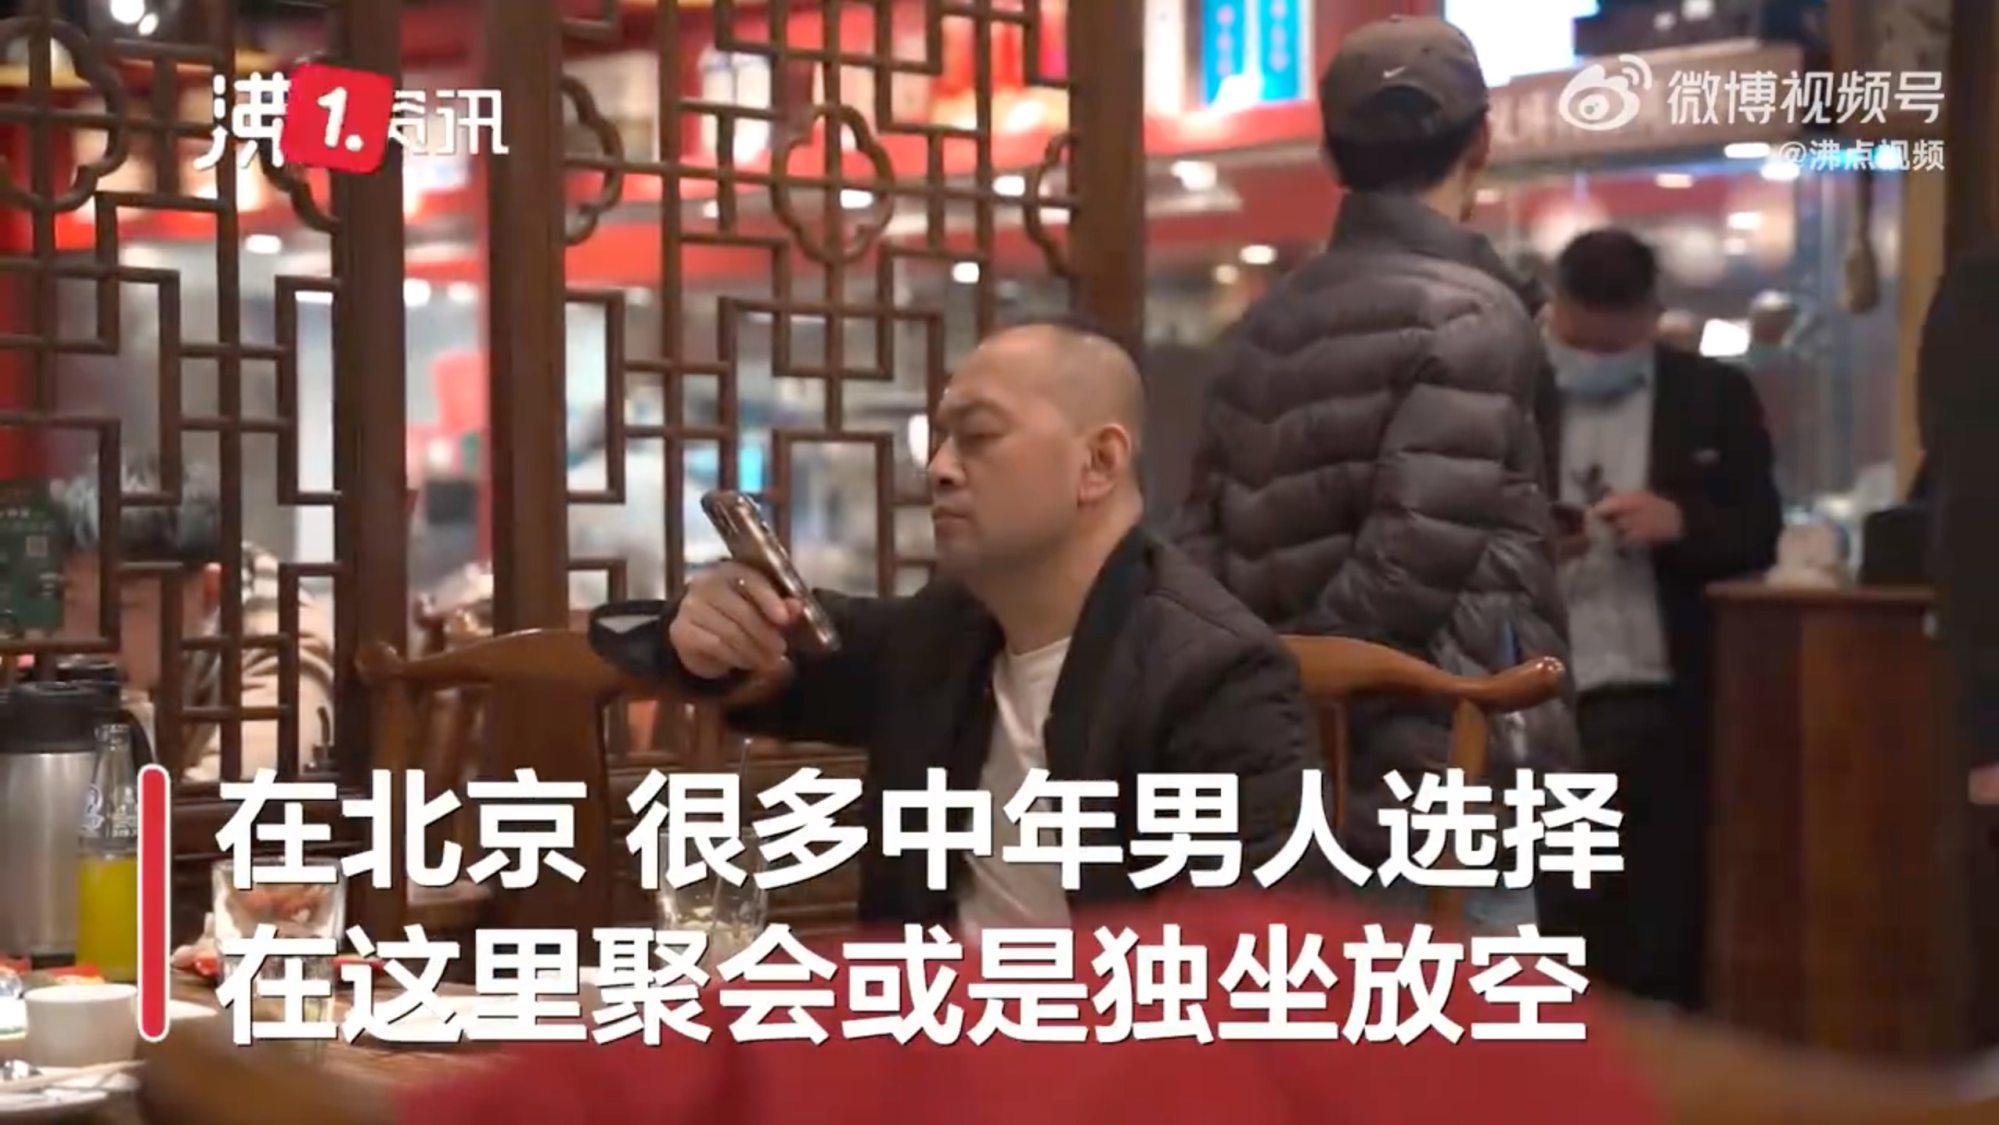 &quot;Thánh địa của những người đàn ông trung niên&quot;: chuỗi nhà hàng ở Trung Quốc nơi người trưởng thành tìm đến để được ở một mình và khóc - Ảnh 2.